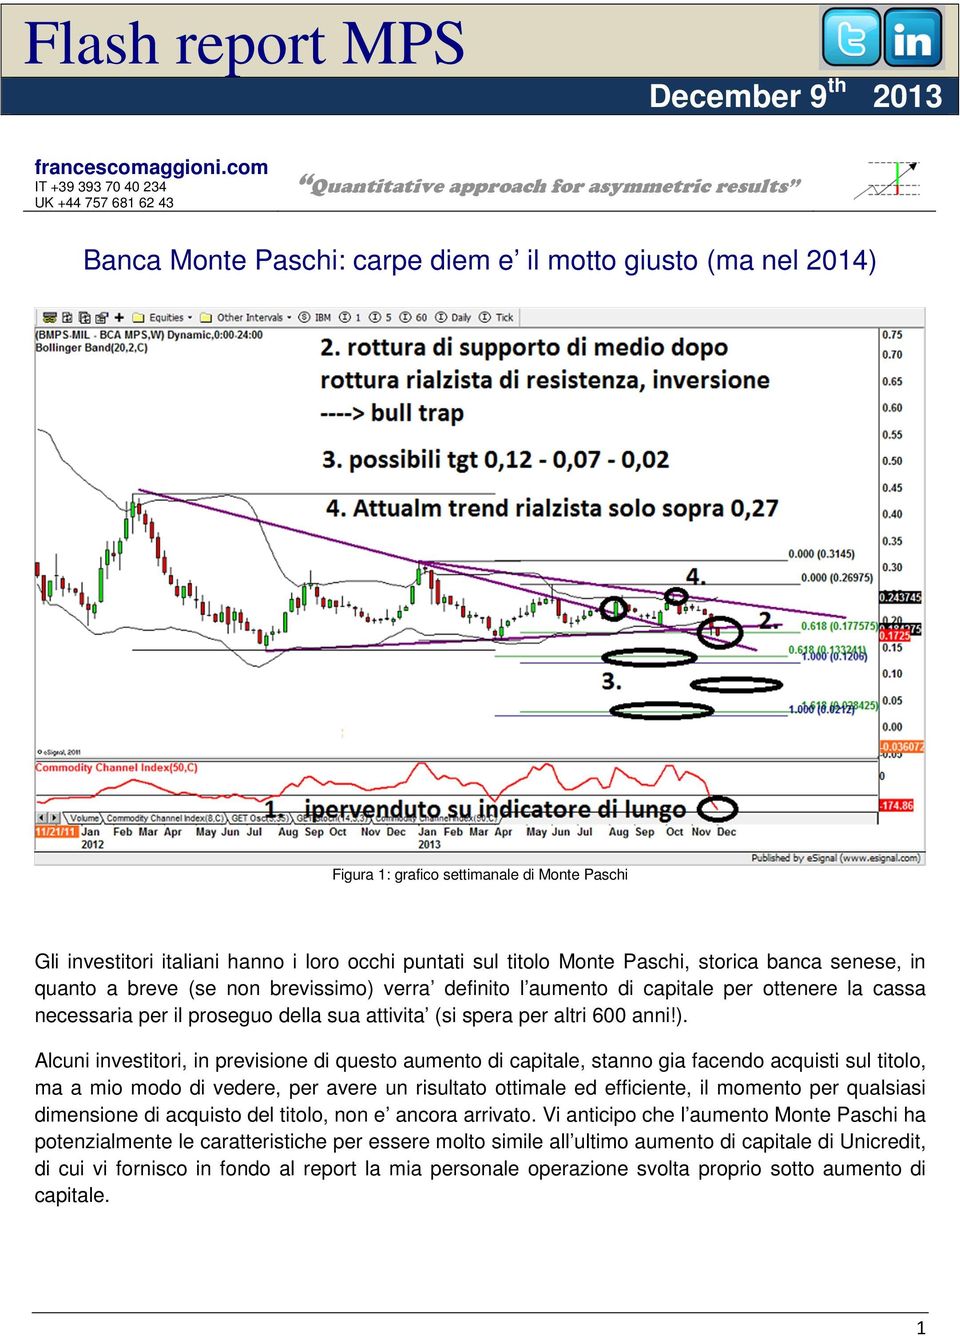 Gli investitori italiani hanno i loro occhi puntati sul titolo Monte Paschi, storica banca senese, in quanto a breve (se non brevissimo) verra definito l aumento di capitale per ottenere la cassa